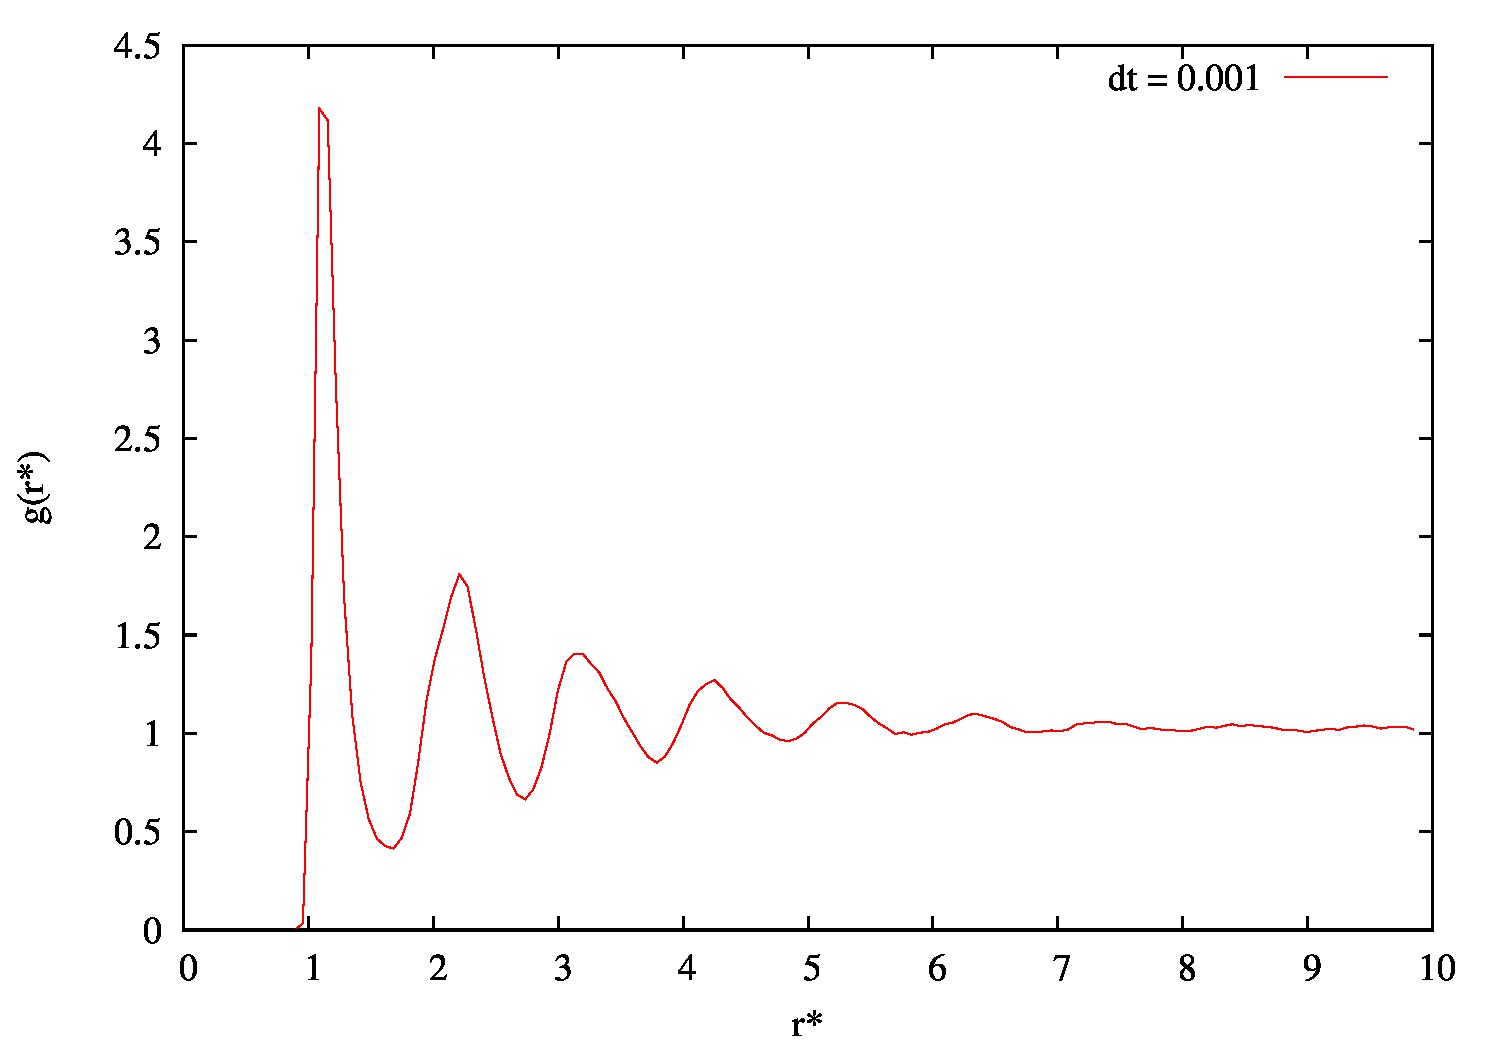 MSD para uma densidade de 5%. É possível perceber o comportamento balístico inicial e então o comportamento linear. O ajuste linear foi realizado no intervalo [10, 50].